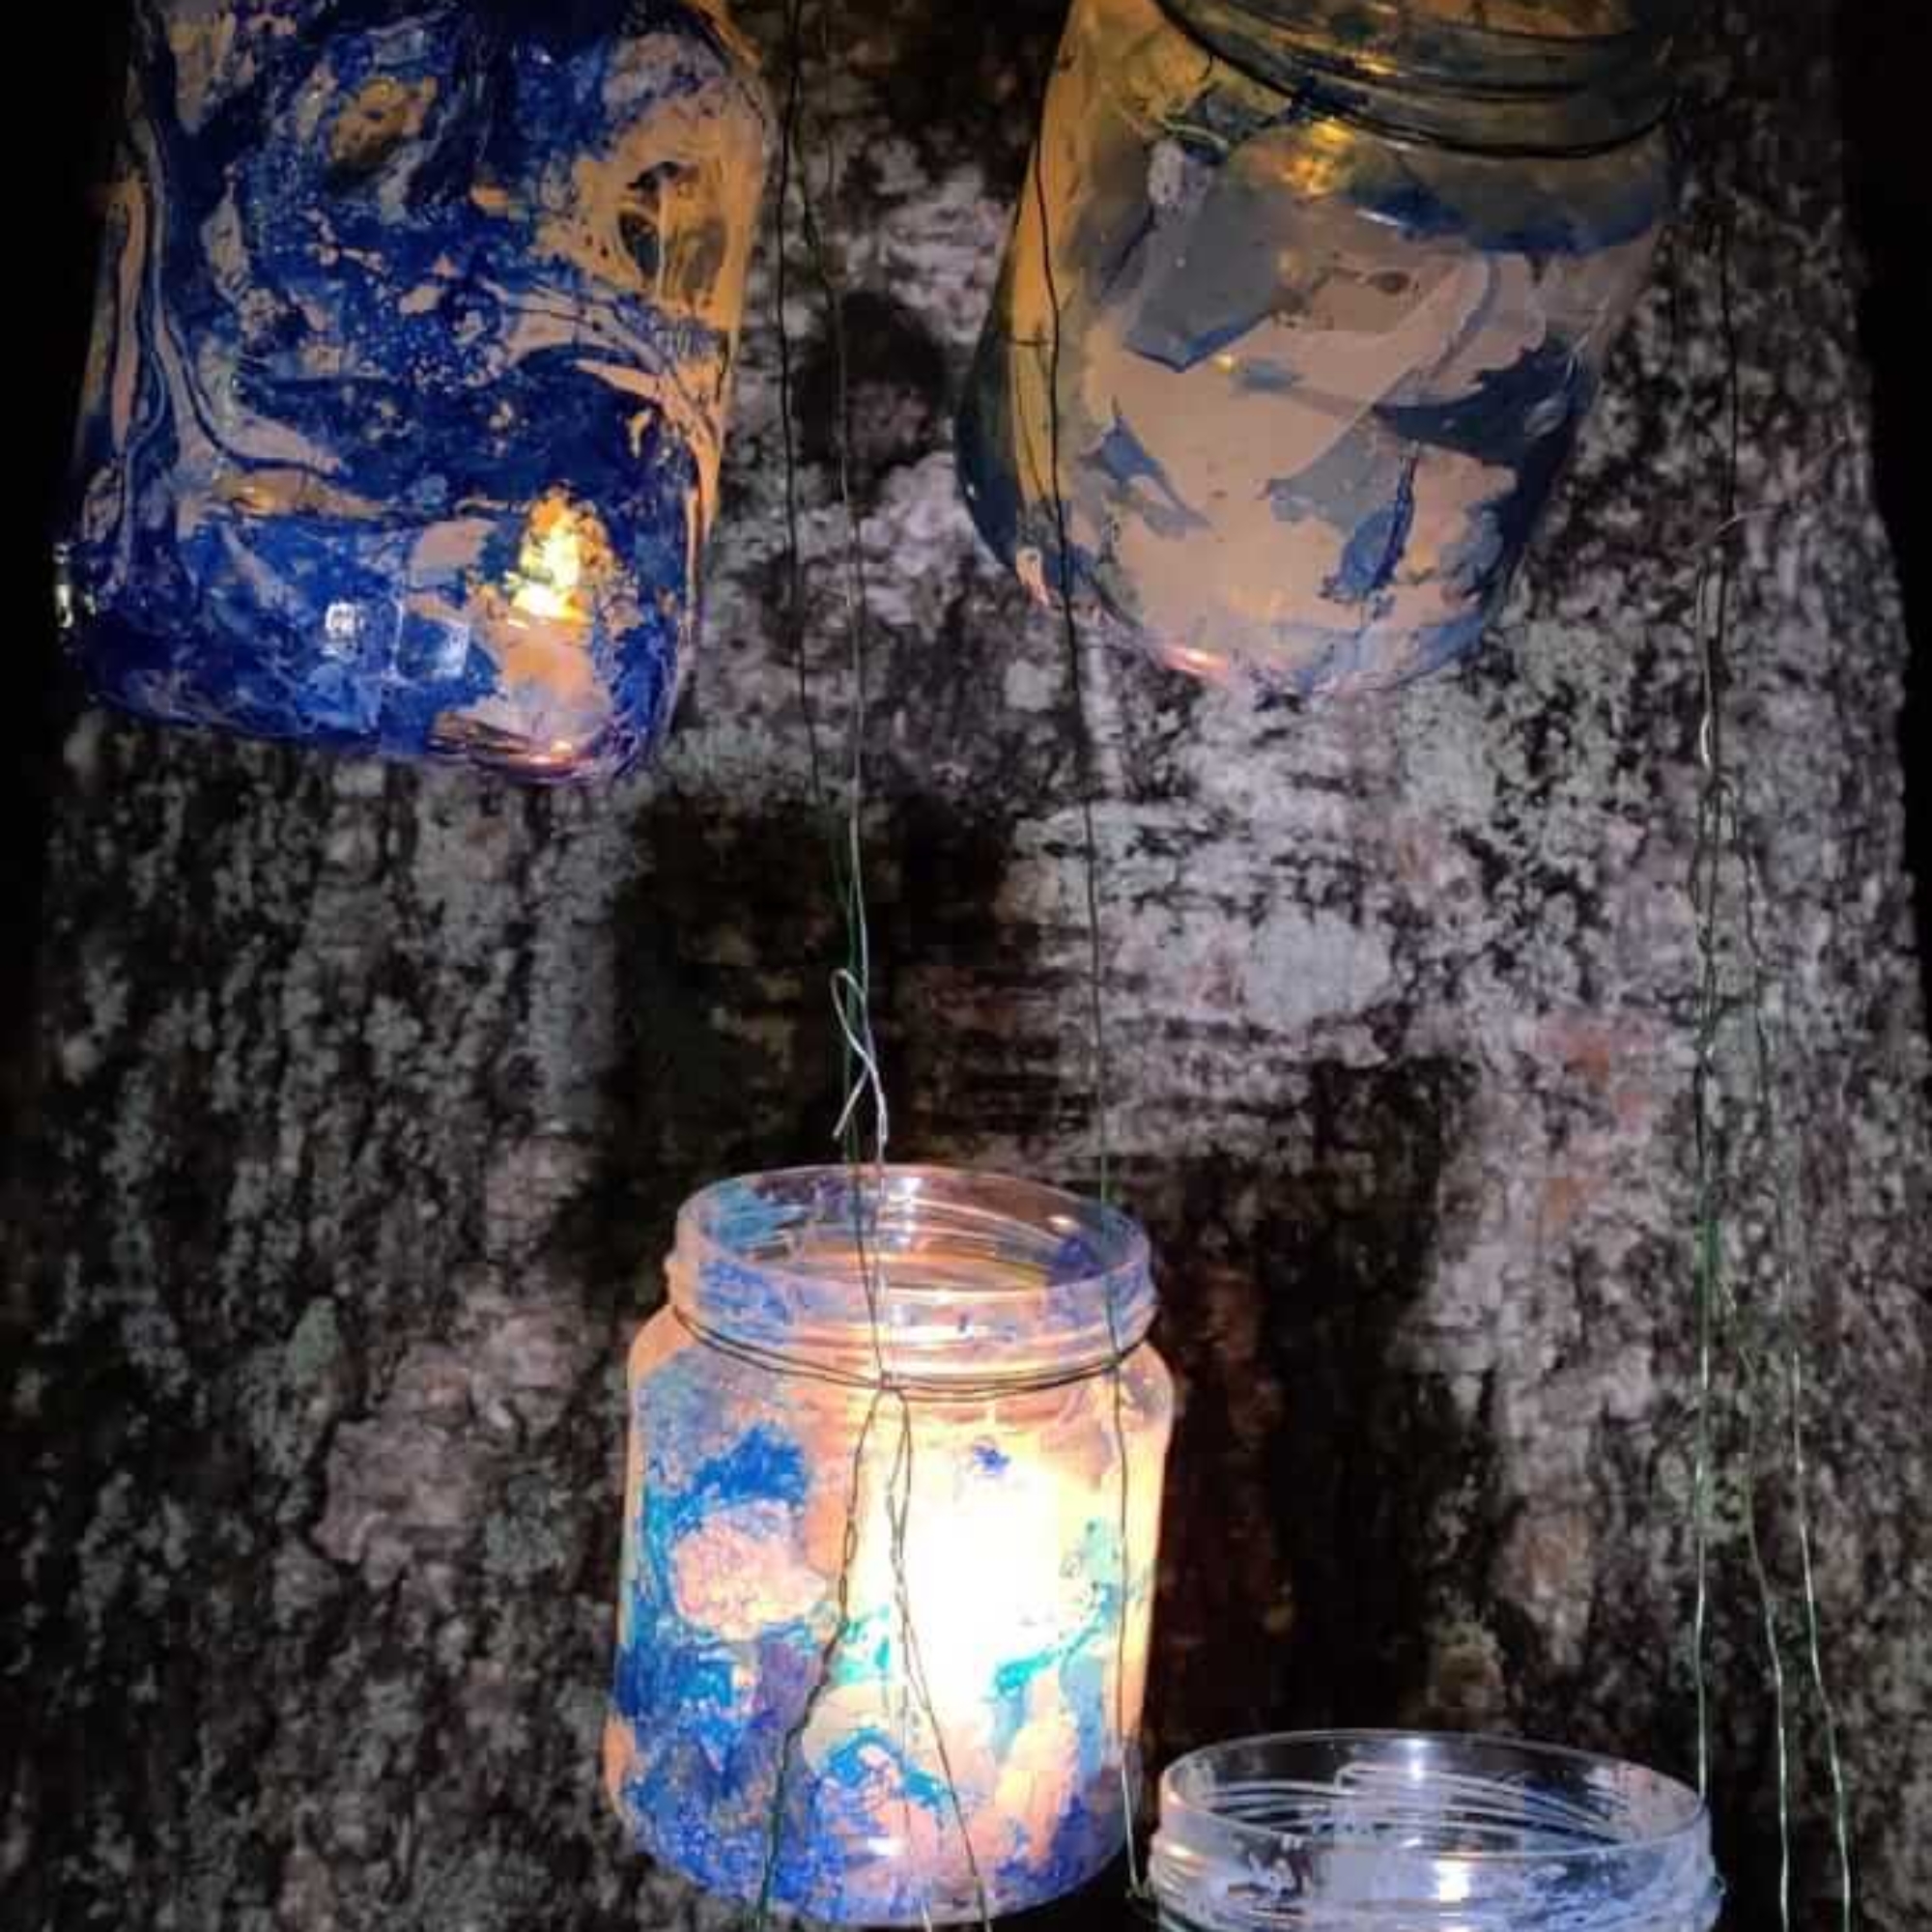 Lasten maalaamia lasipurkeista tehtyjä kynttilälyhtyjä ripustettuna puun runkoon.